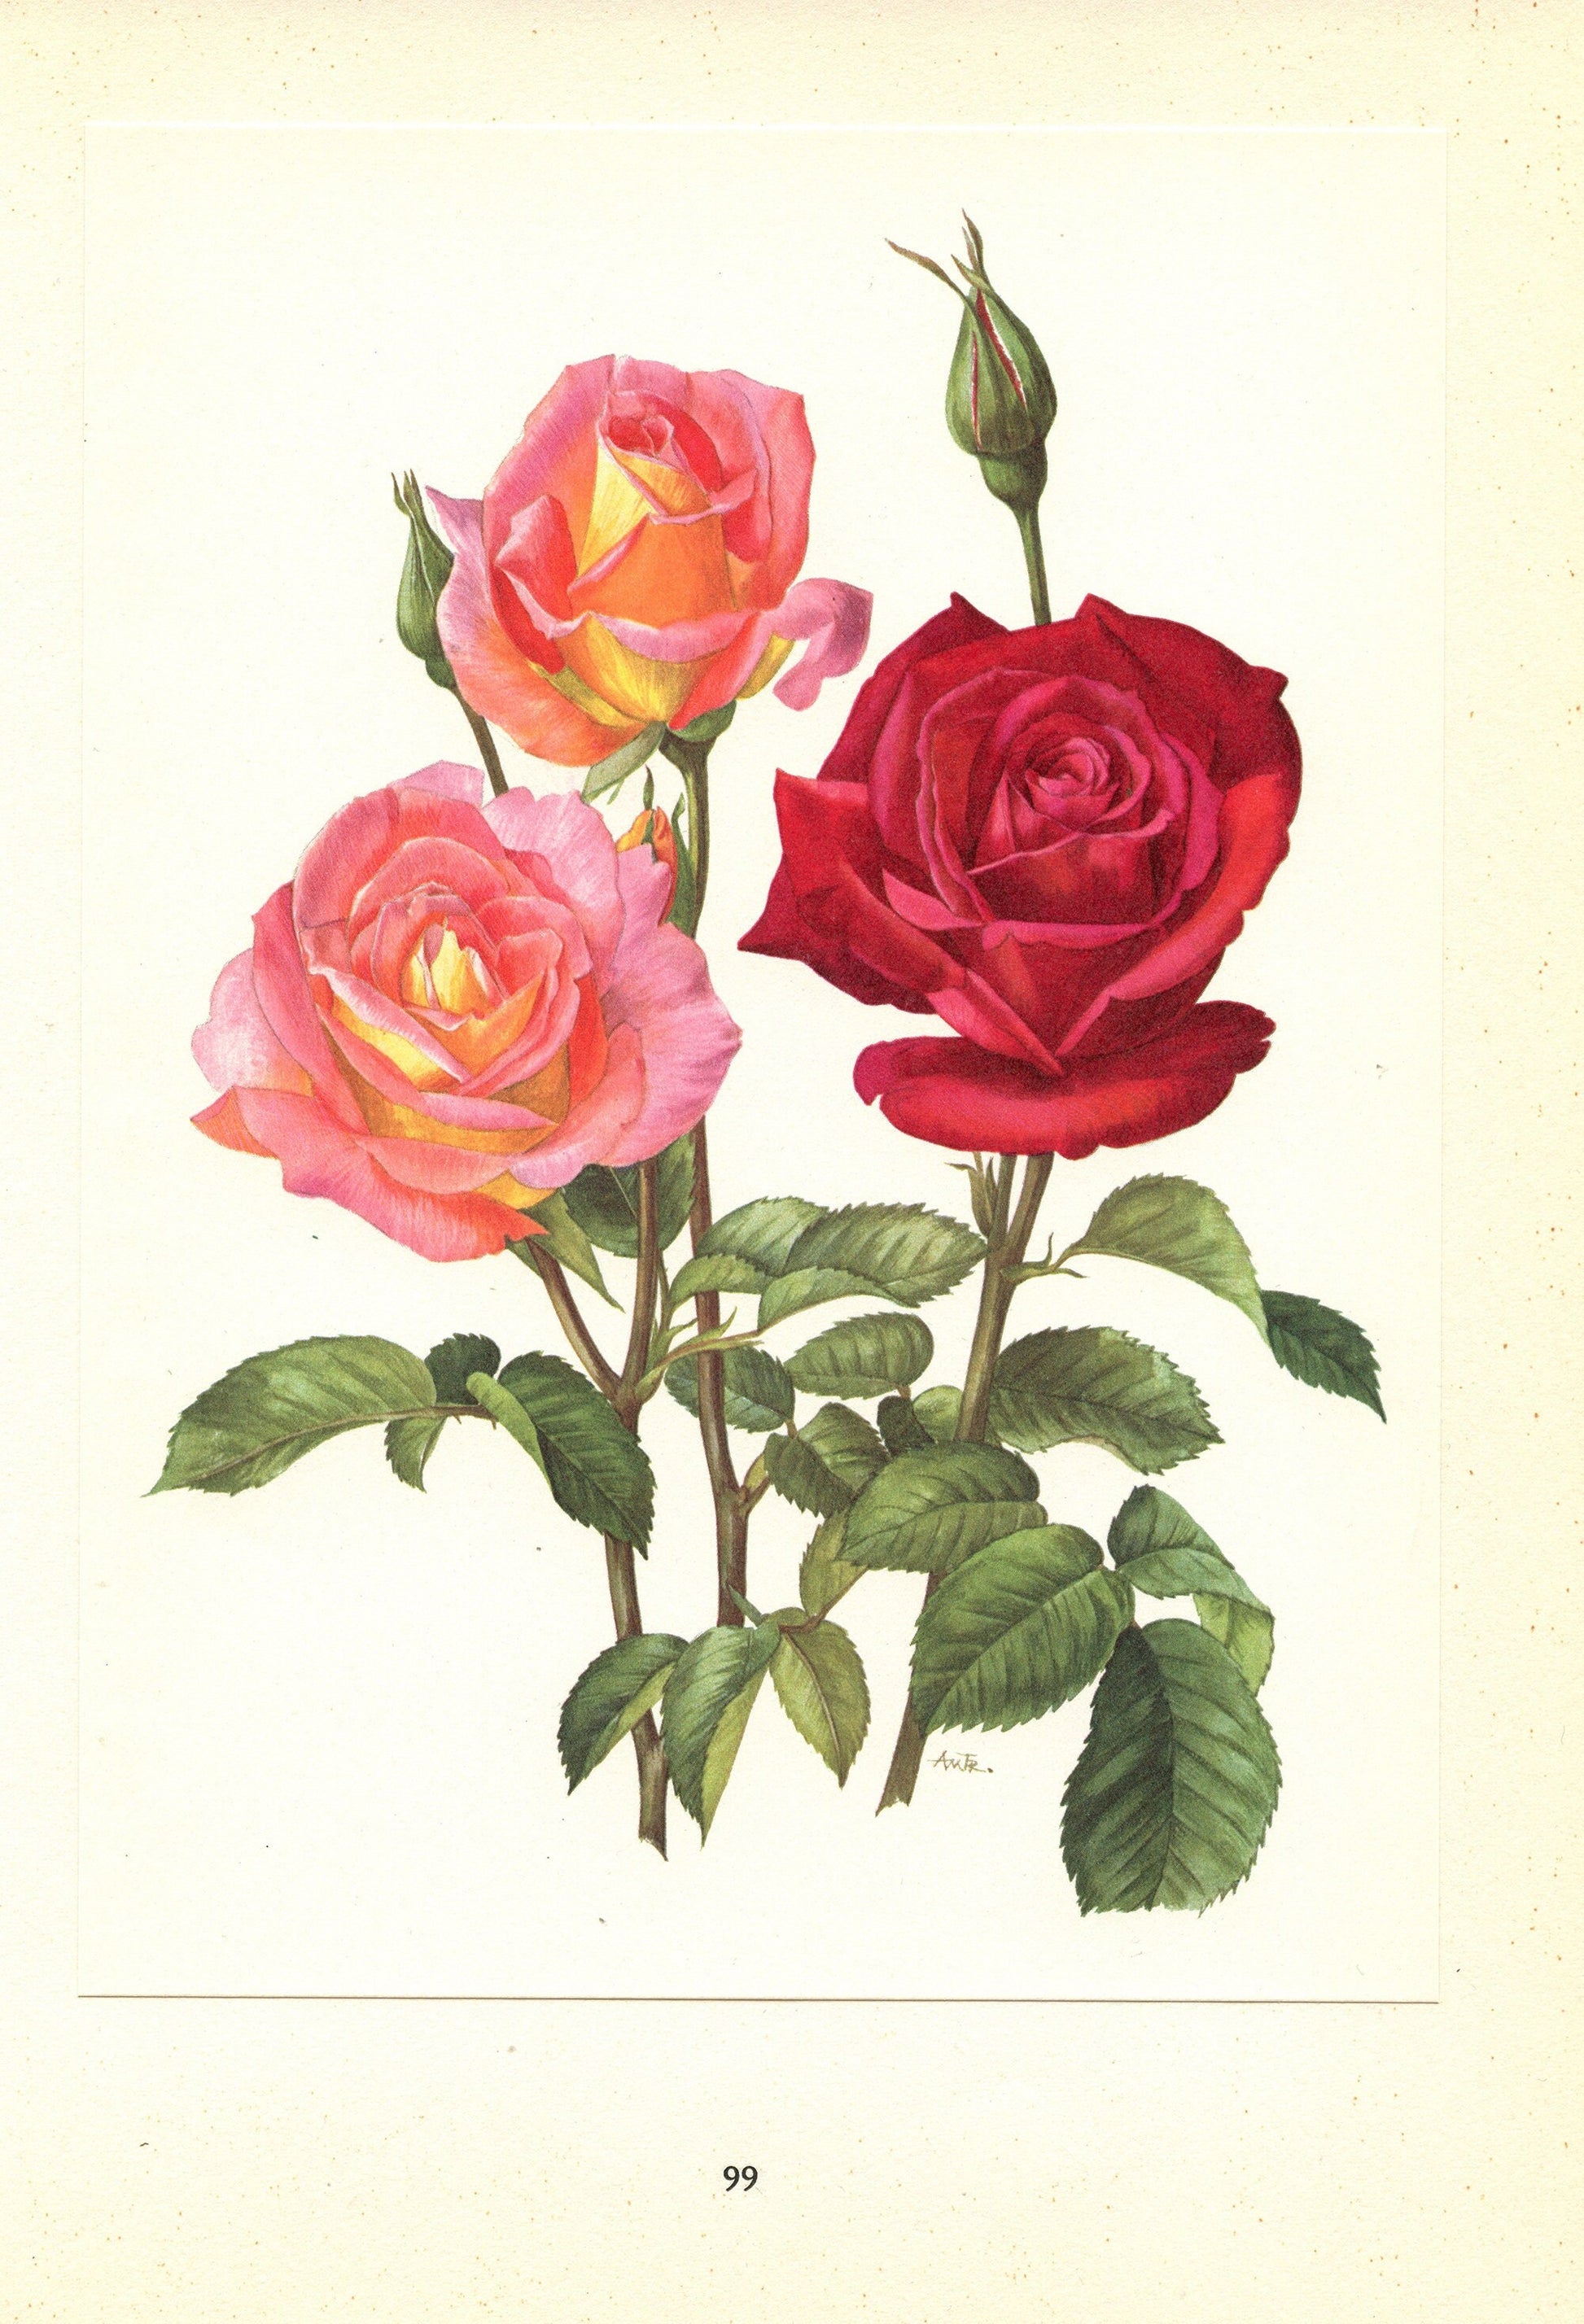 1962 Chrysler Imperial Love Song Botanical & Roses art